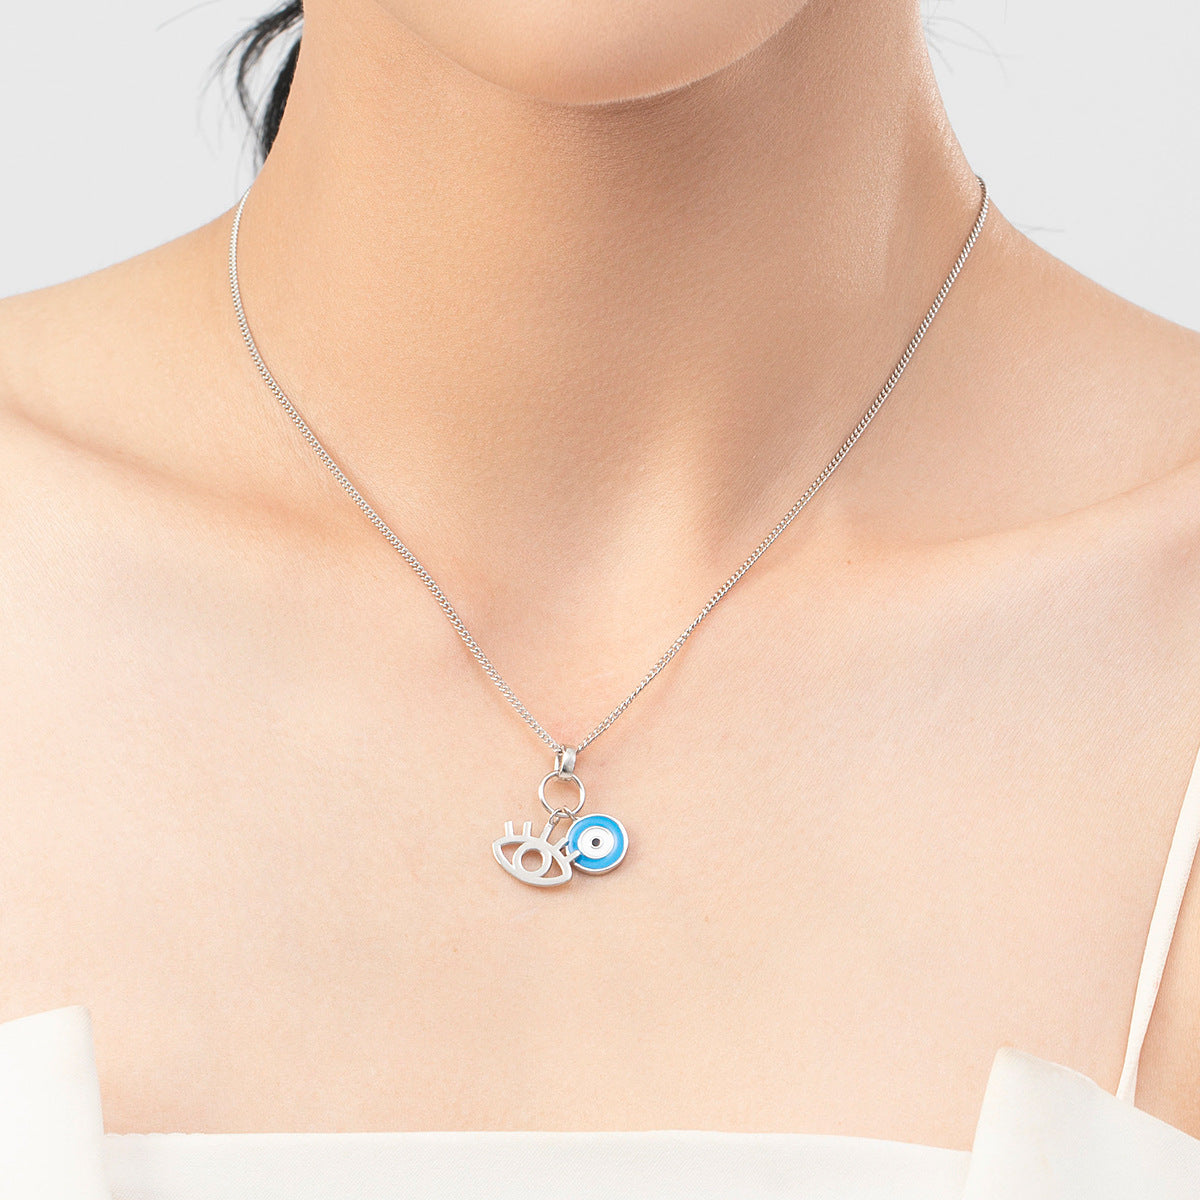 Sterling Silver Enamel Blue Eyes Necklace for Women